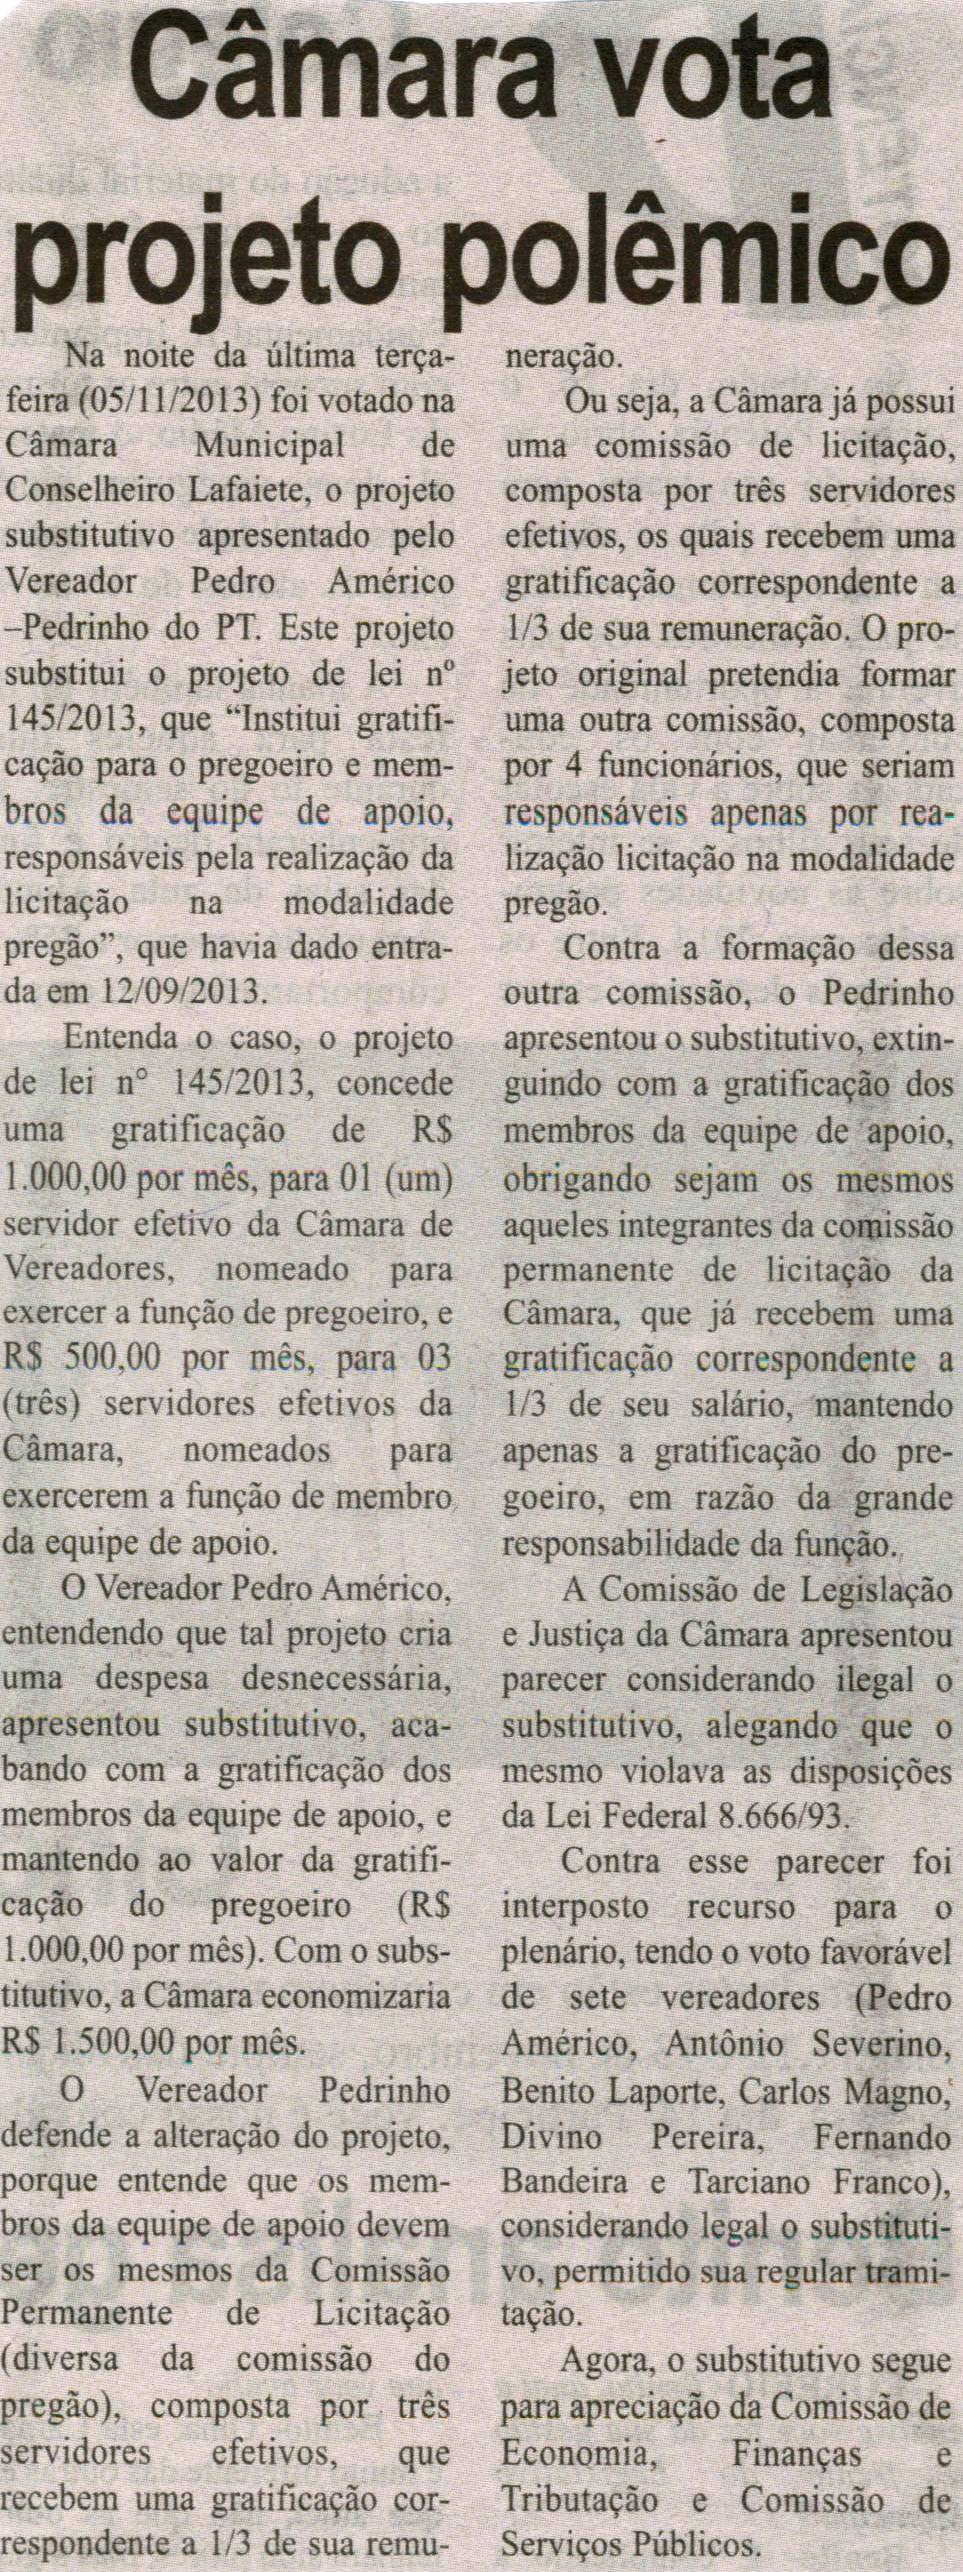 Câmara vota projeto polêmico. Jornal Correio da Cidade, Conselheiro Lafaiete, 09 nov. 2013, p. 5.